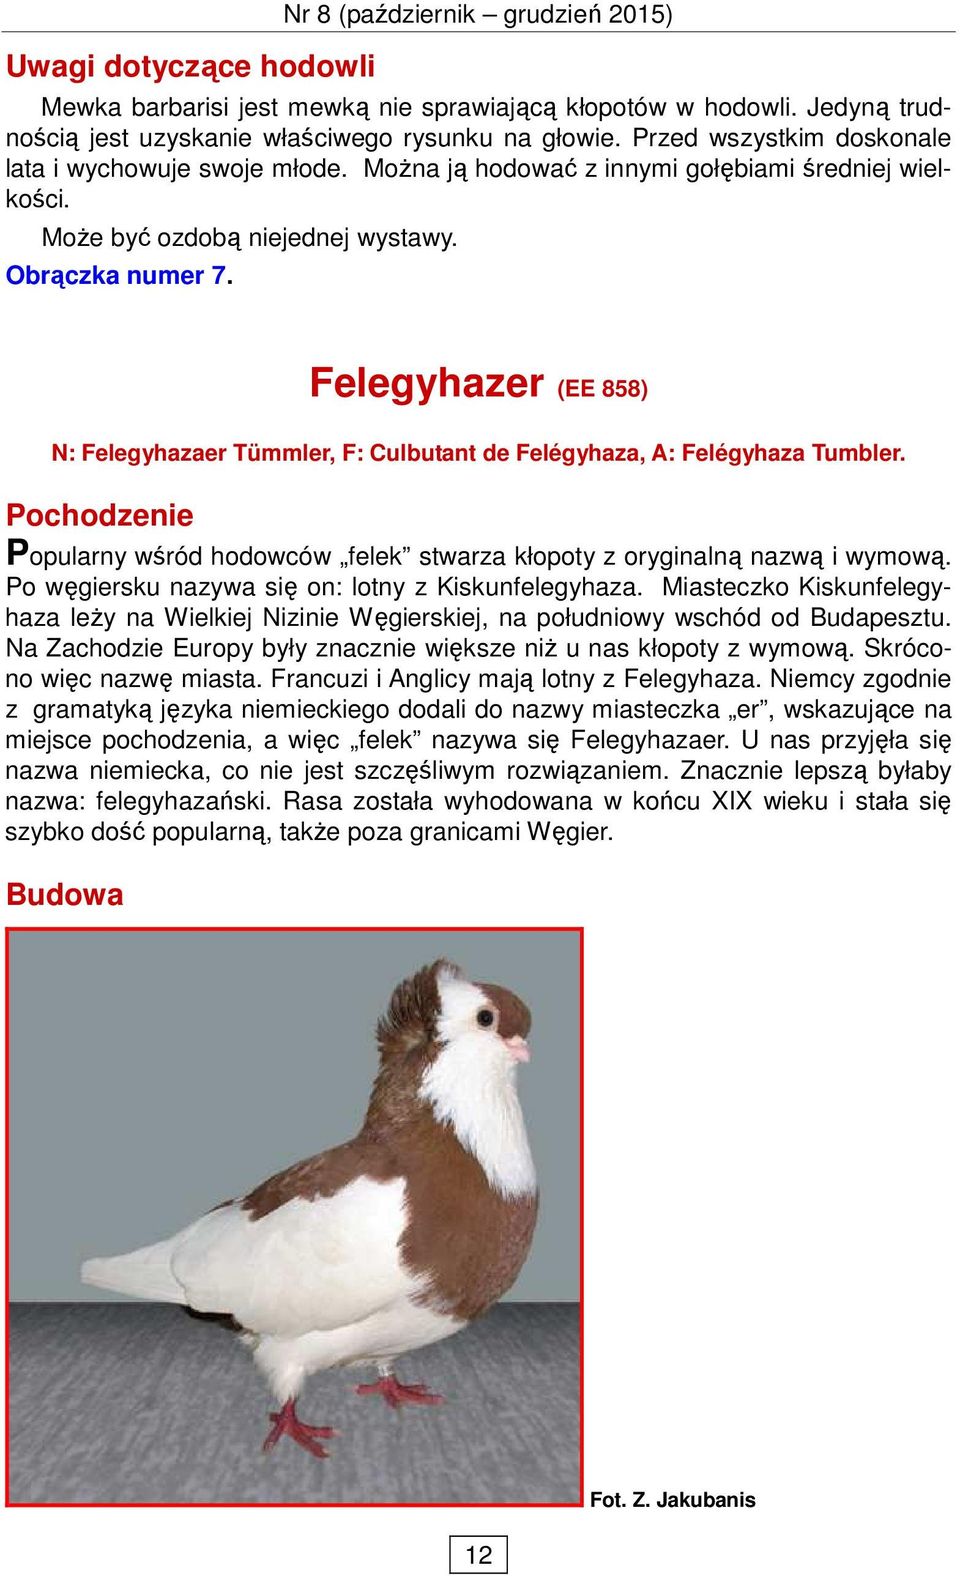 Felegyhazer (EE 858) N: Felegyhazaer Tümmler, F: Culbutant de Felégyhaza, A: Felégyhaza Tumbler. Pochodzenie Popularny wśród hodowców felek stwarza kłopoty z oryginalną nazwą i wymową.